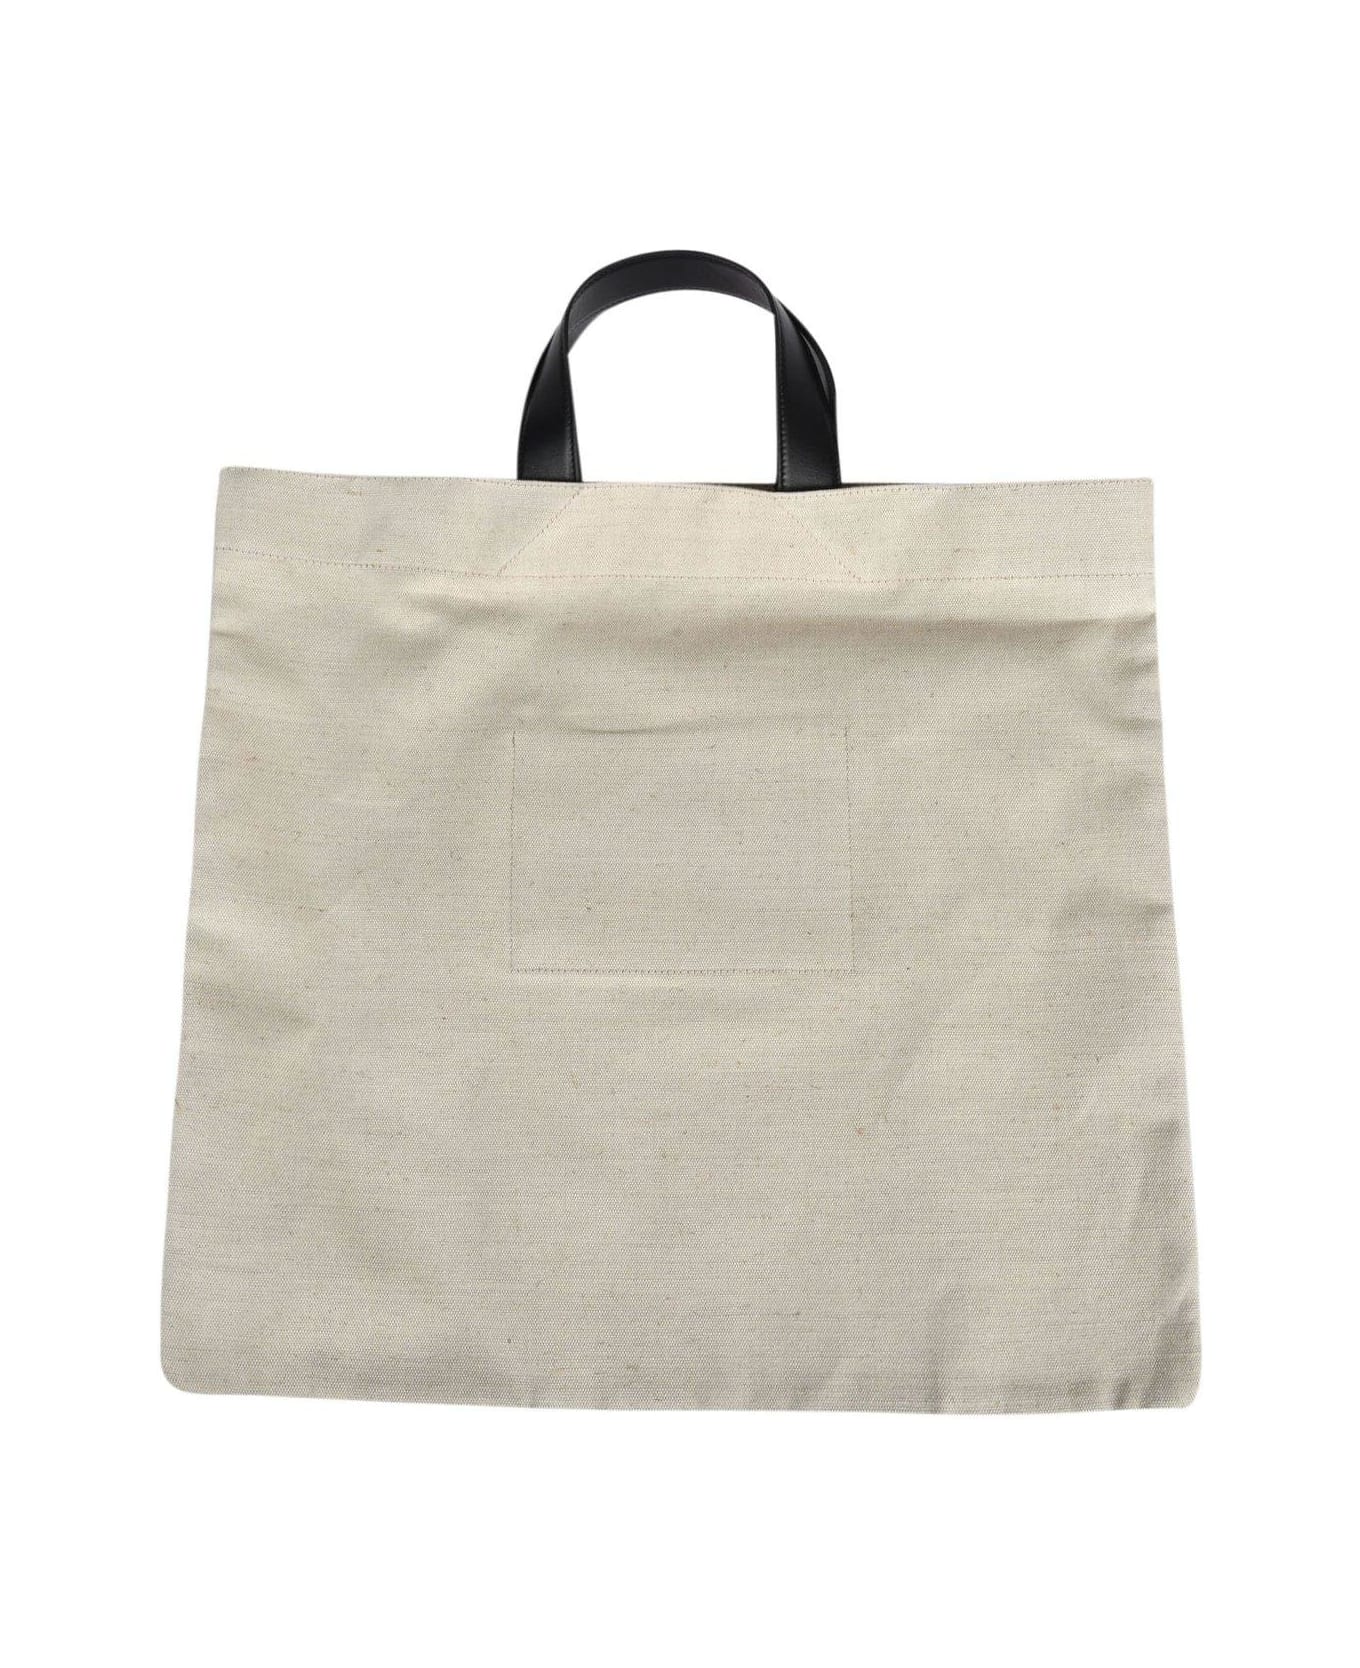 Jil Sander Logo Printed Large Tote Bag - Beige トートバッグ